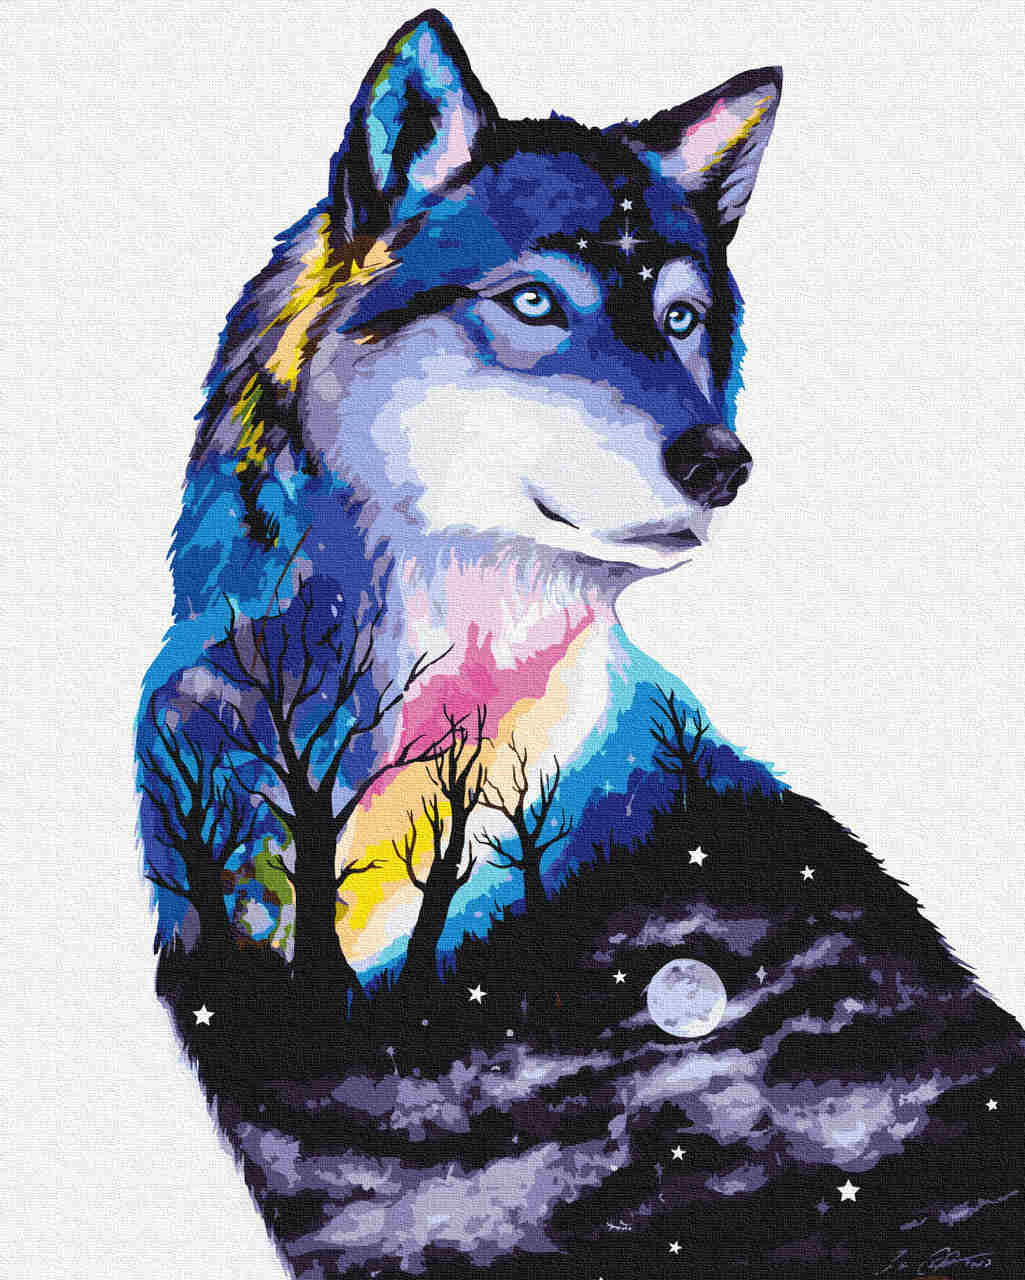 Malen nach Zahlen   wolf night   by Pixie Cold